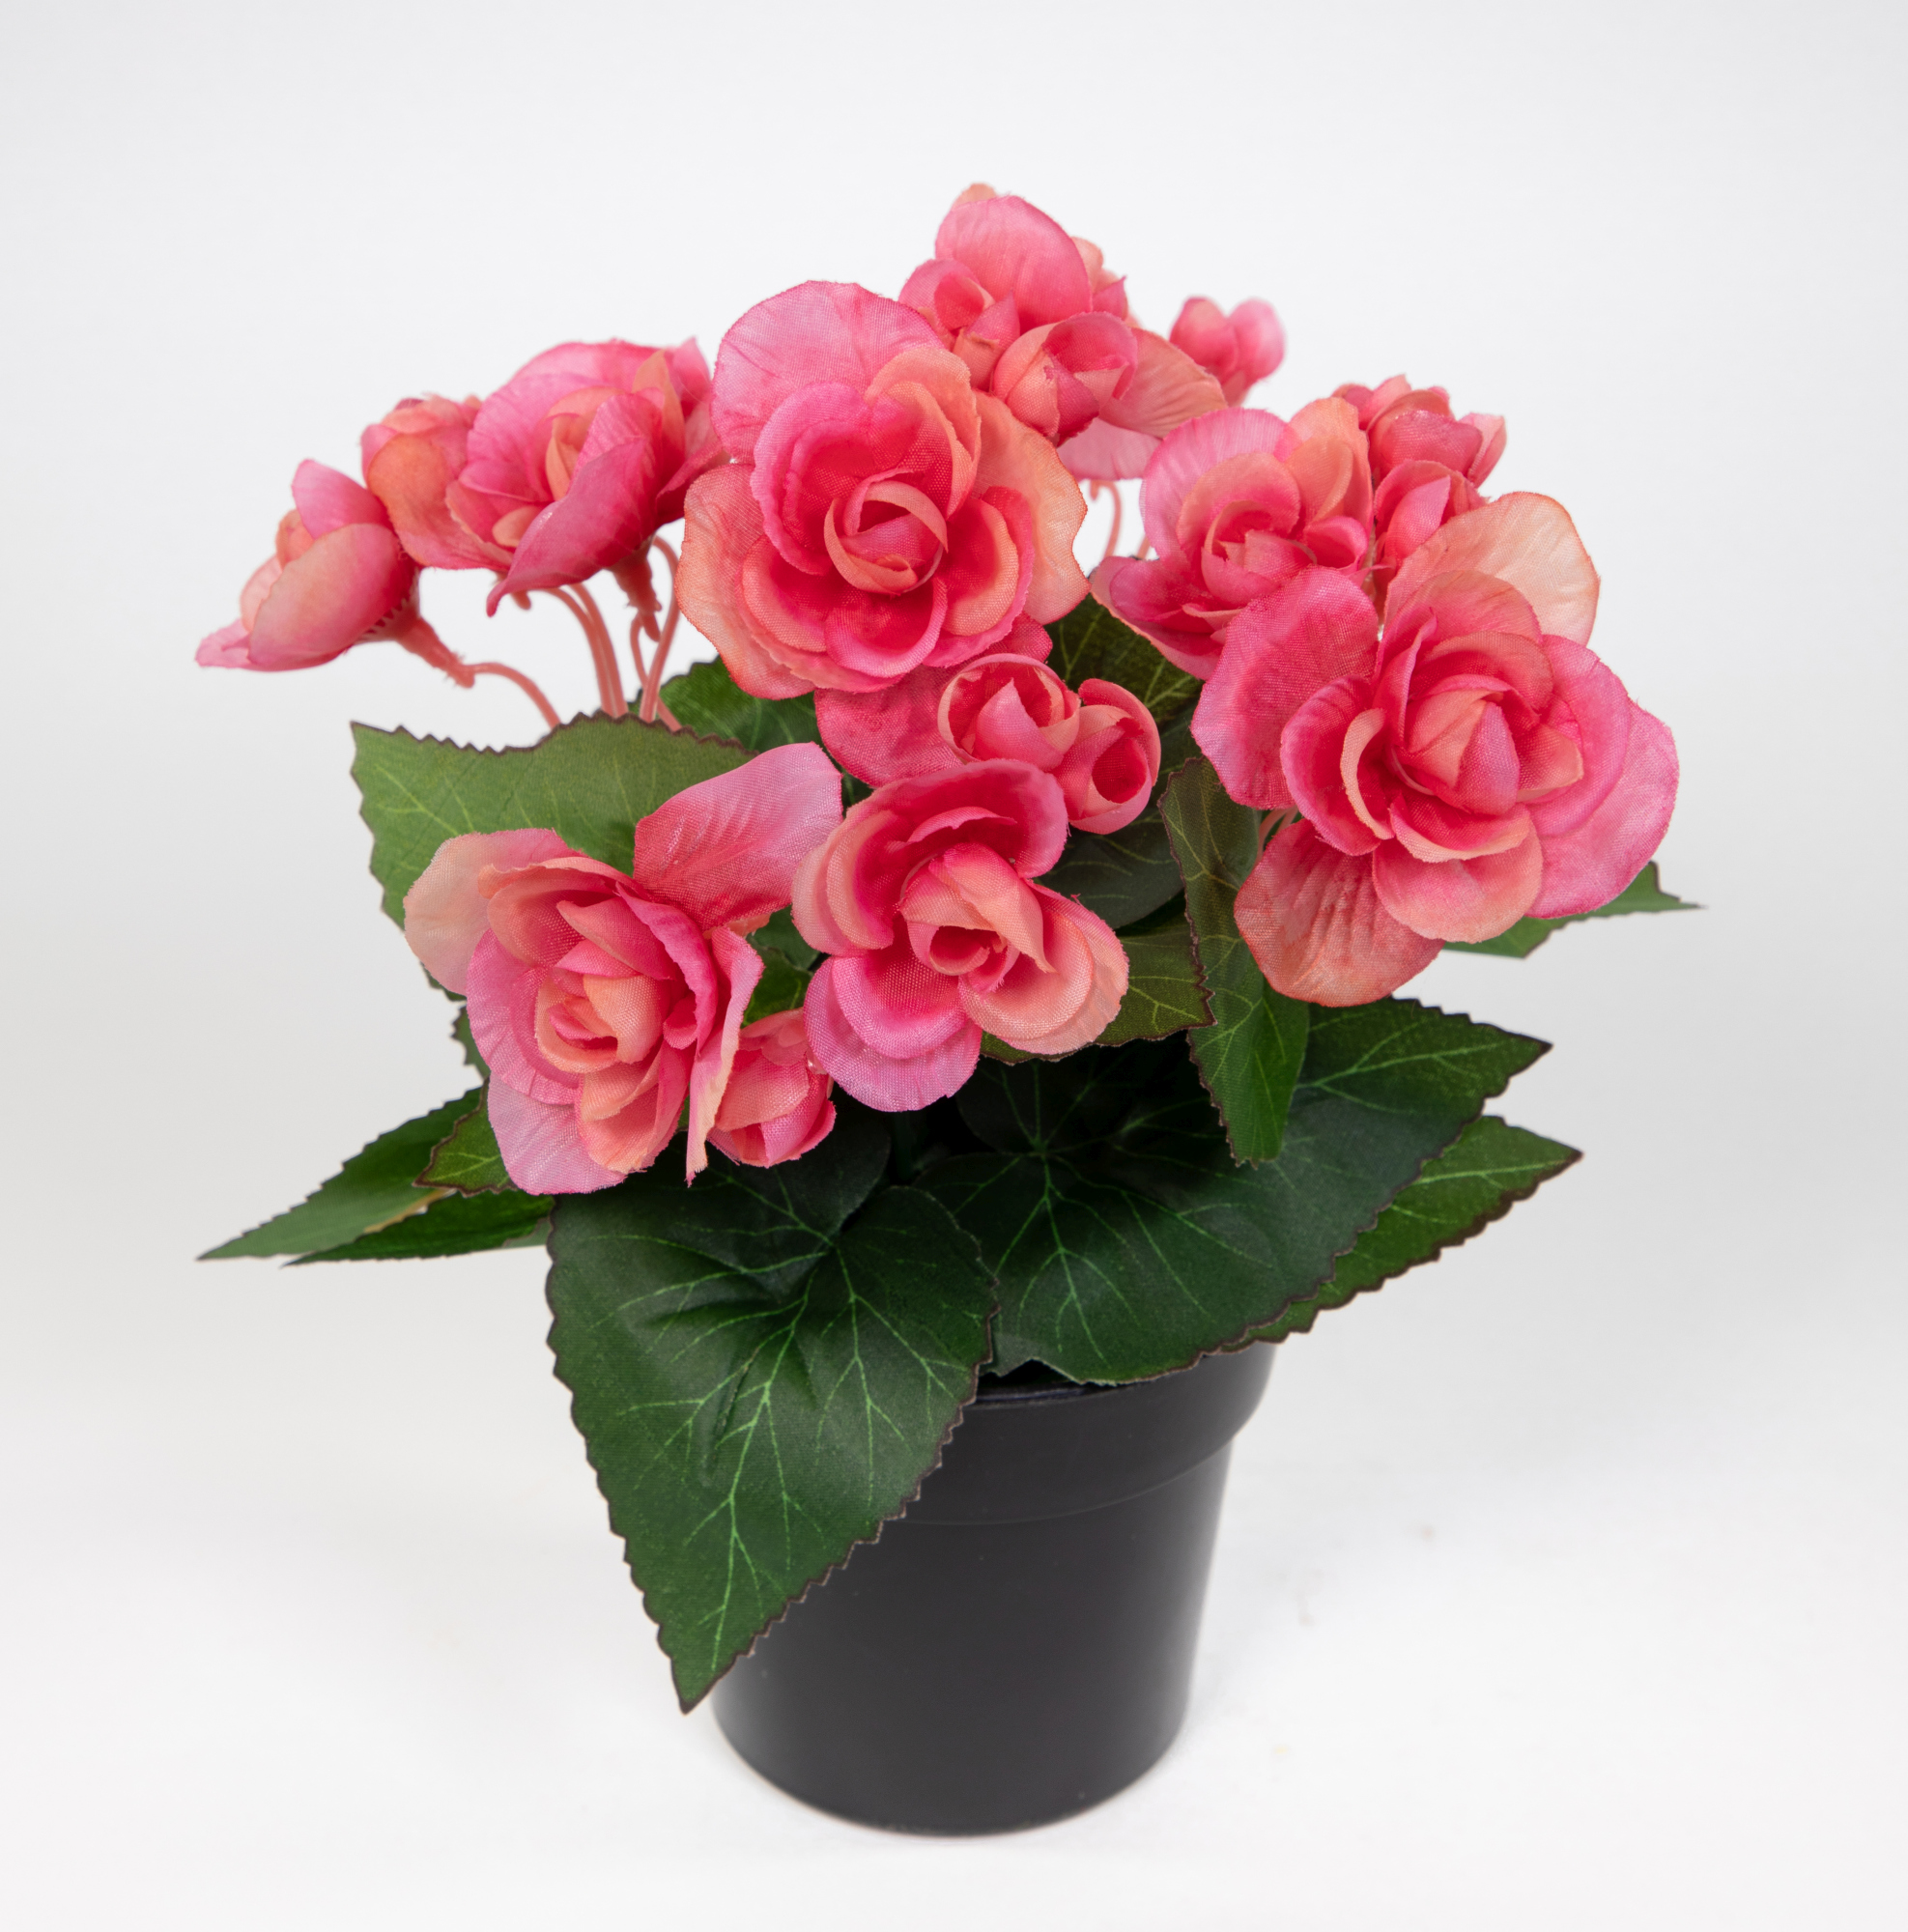 Begonie 20cm pink im Topf JA Kunstpflanzen Begonienbusch künstliche Blumen Pflanzen Kunstblumen